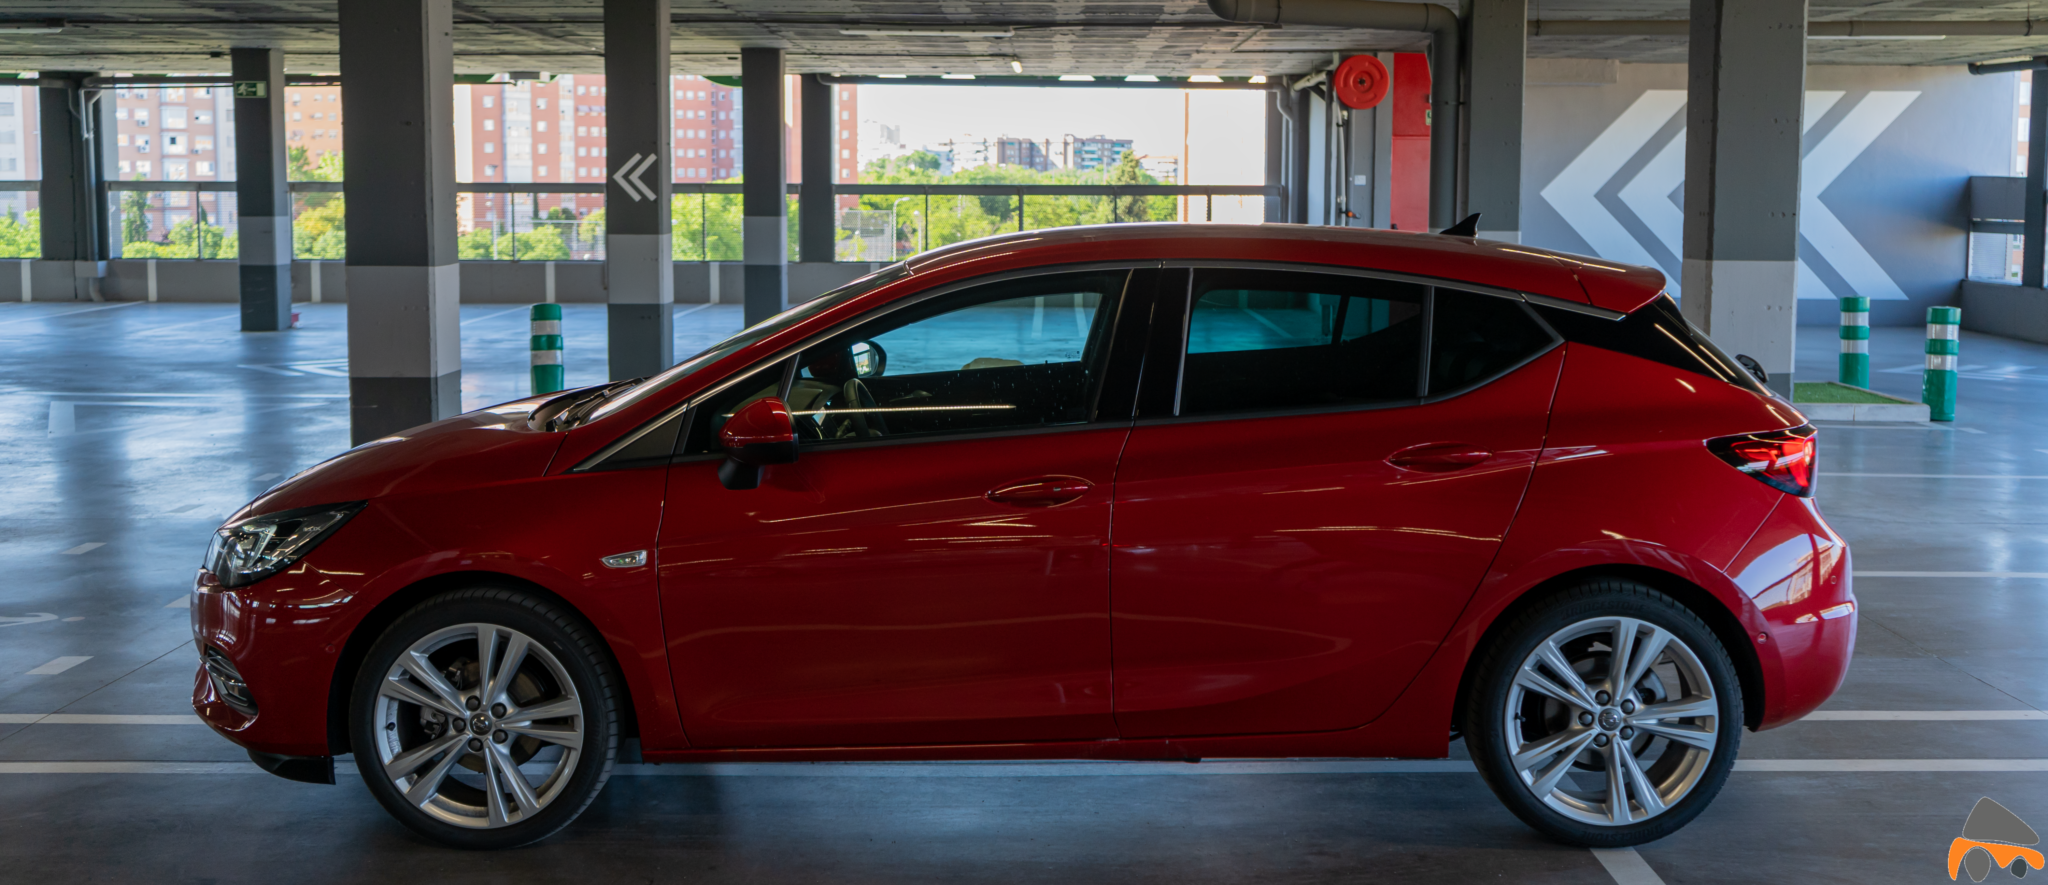 Lateral izquierdo Opel Astra 2020 145 CV - Opel Astra 2020 1.2 Turbo con 145 CV: Una renovación leve, pero muy necesaria